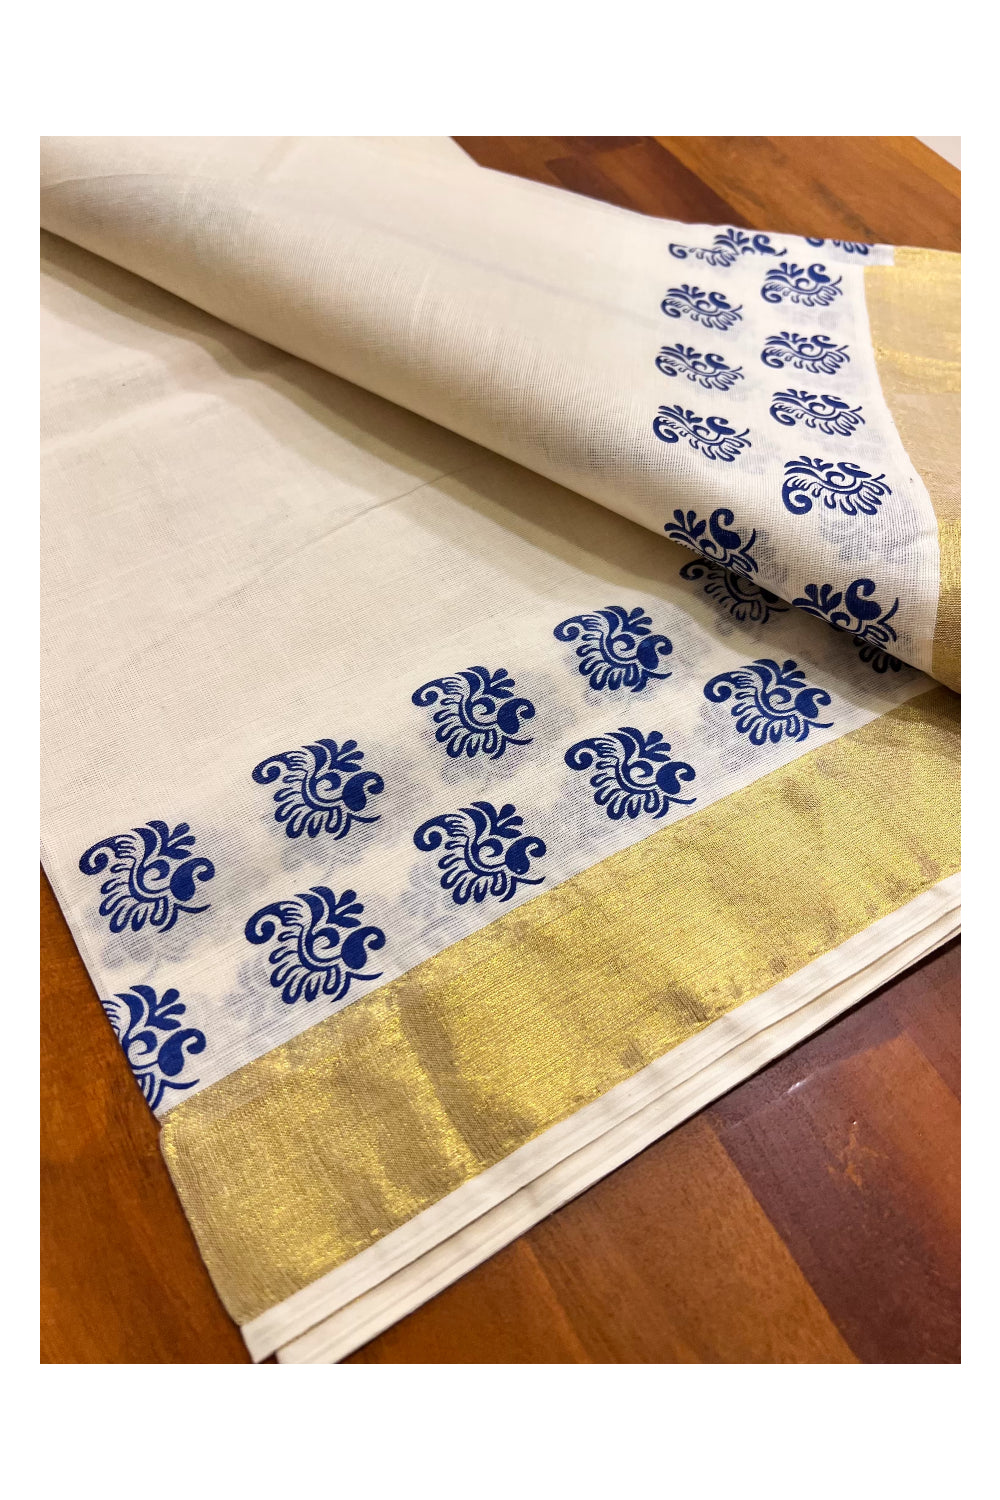 Kerala Pure Cotton Set Mundu Single (Mundum Neriyathum) with Block Prints on Blue and Kasavu Border-2.80Mtrs